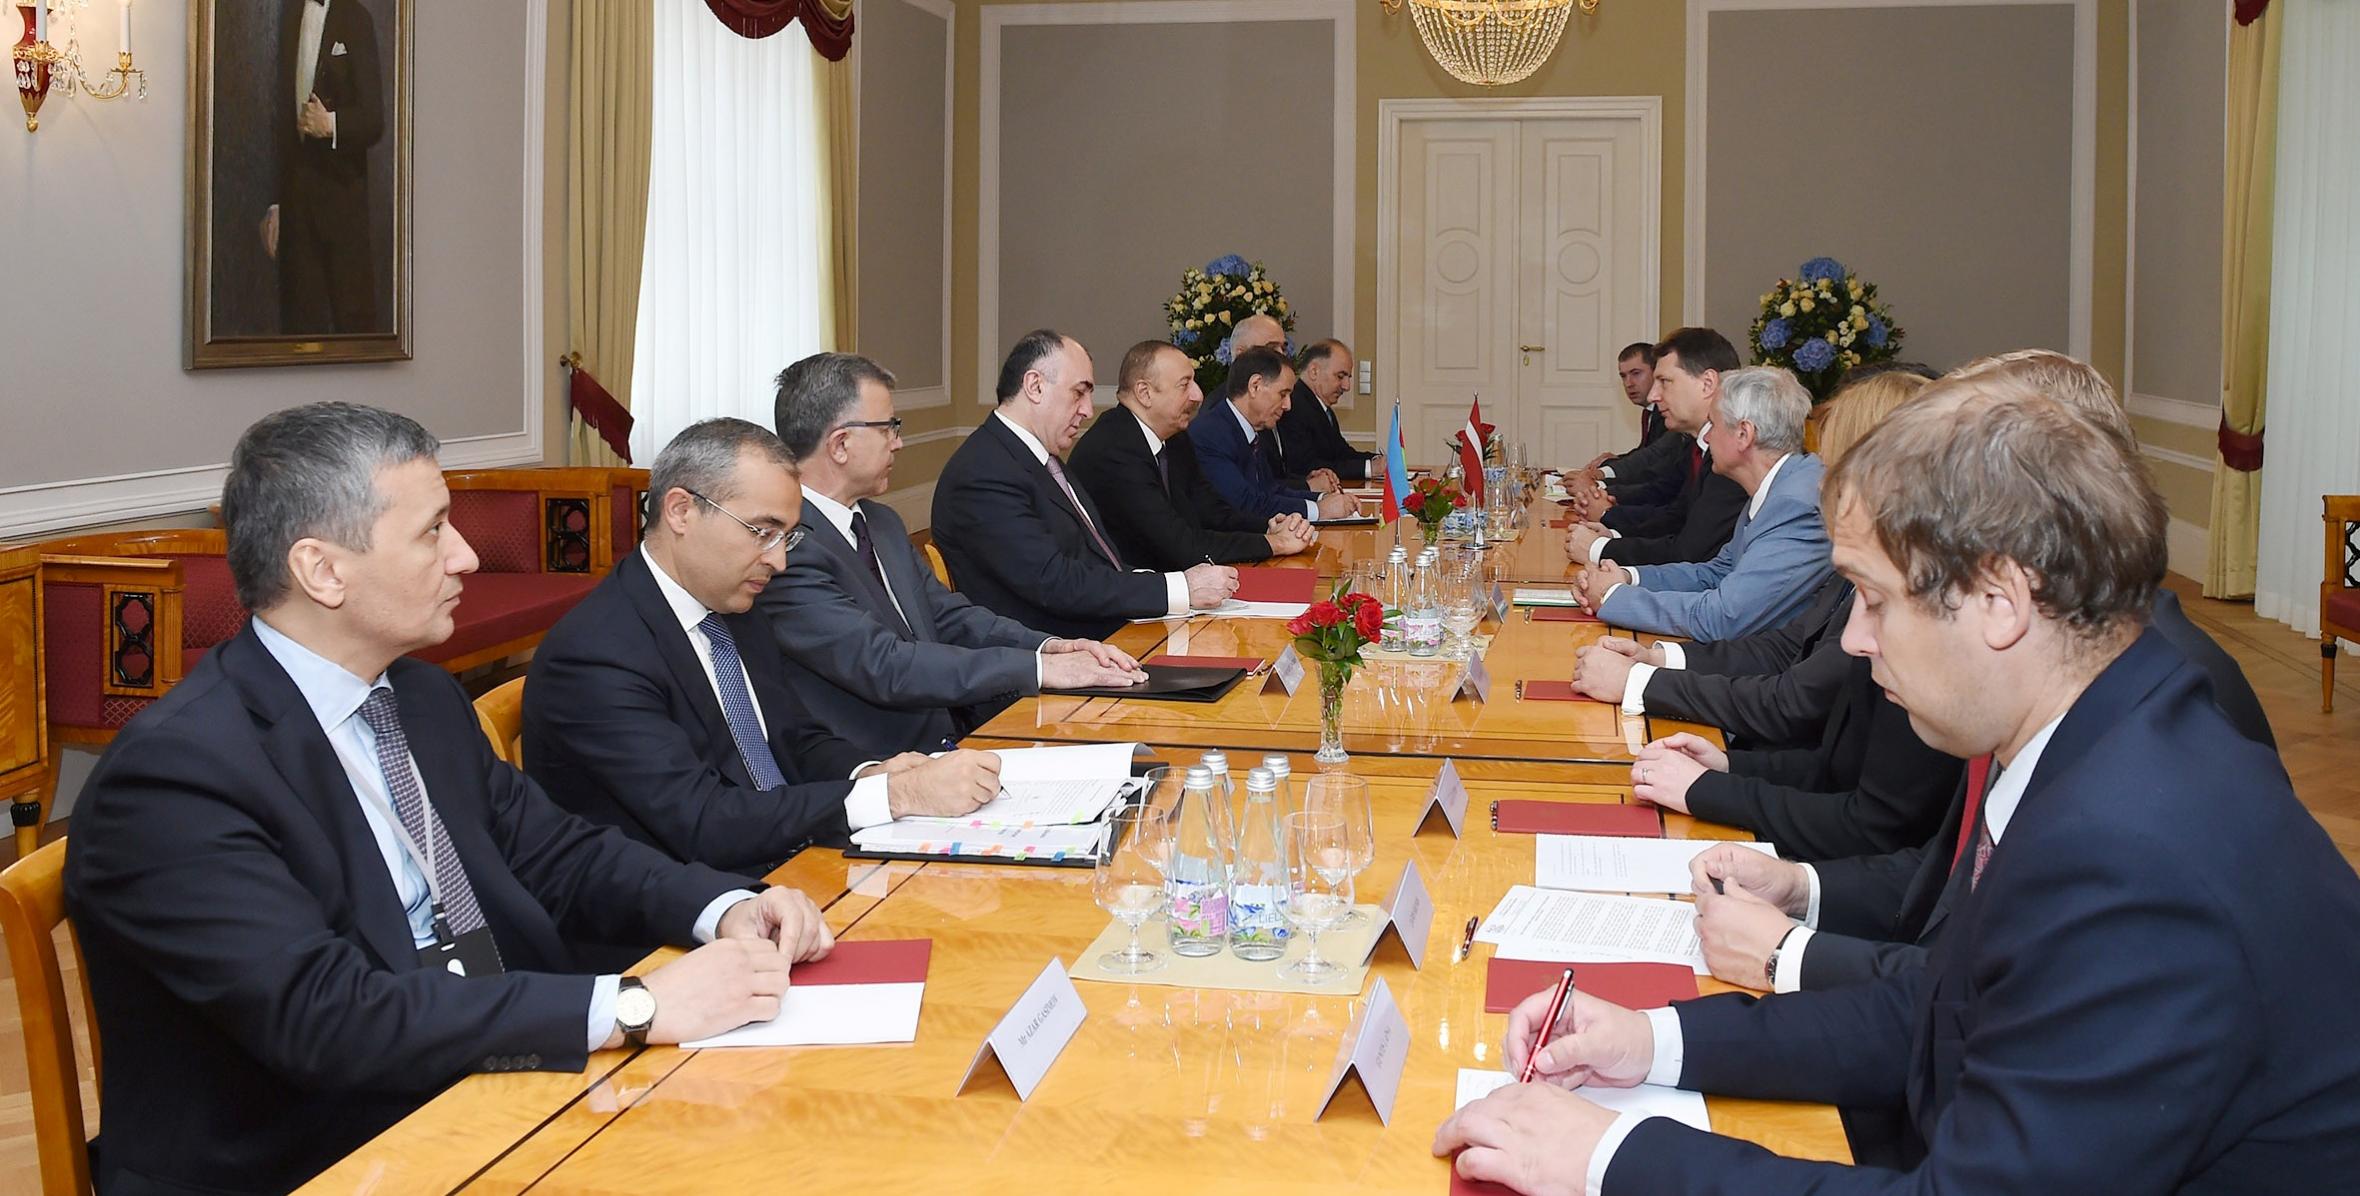 Состоялась встреча Ильхама Алиева и Президента Латвийской Республики Раймондса Вейониса в расширенном составе с участием делегаций